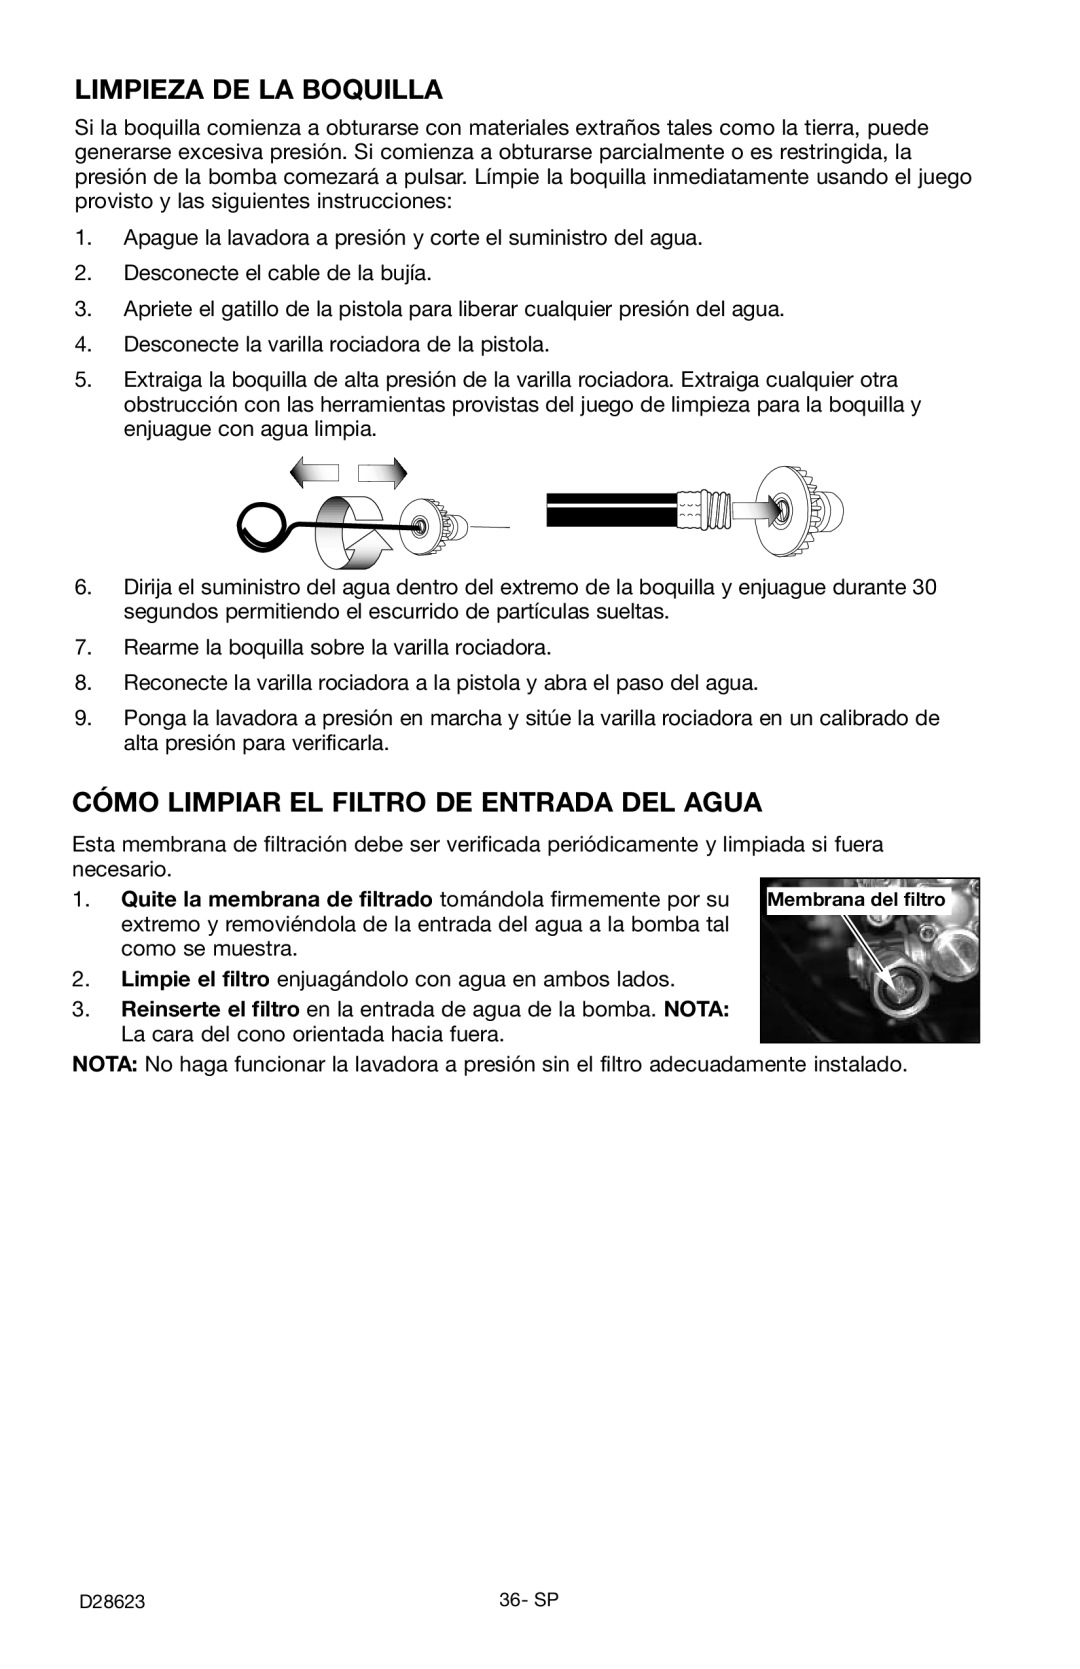 Delta D28623 instruction manual Limpieza De La Boquilla, Cómo Limpiar El Filtro De Entrada Del Agua 